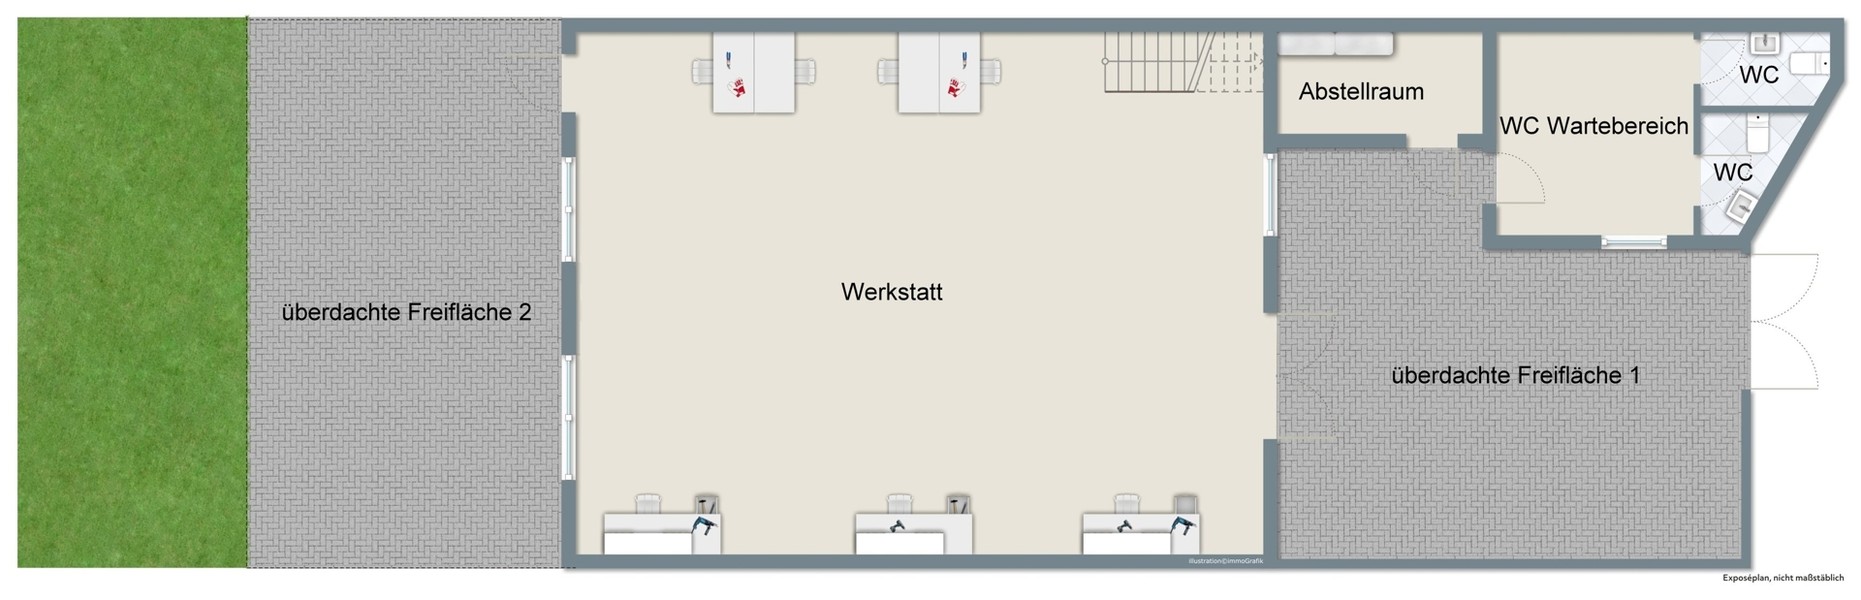 Grundriss Werkstatt - Lebendiger Standort in begehrter Lage: Wohn- und Geschäftshaus in der Heidelberger Altstadt